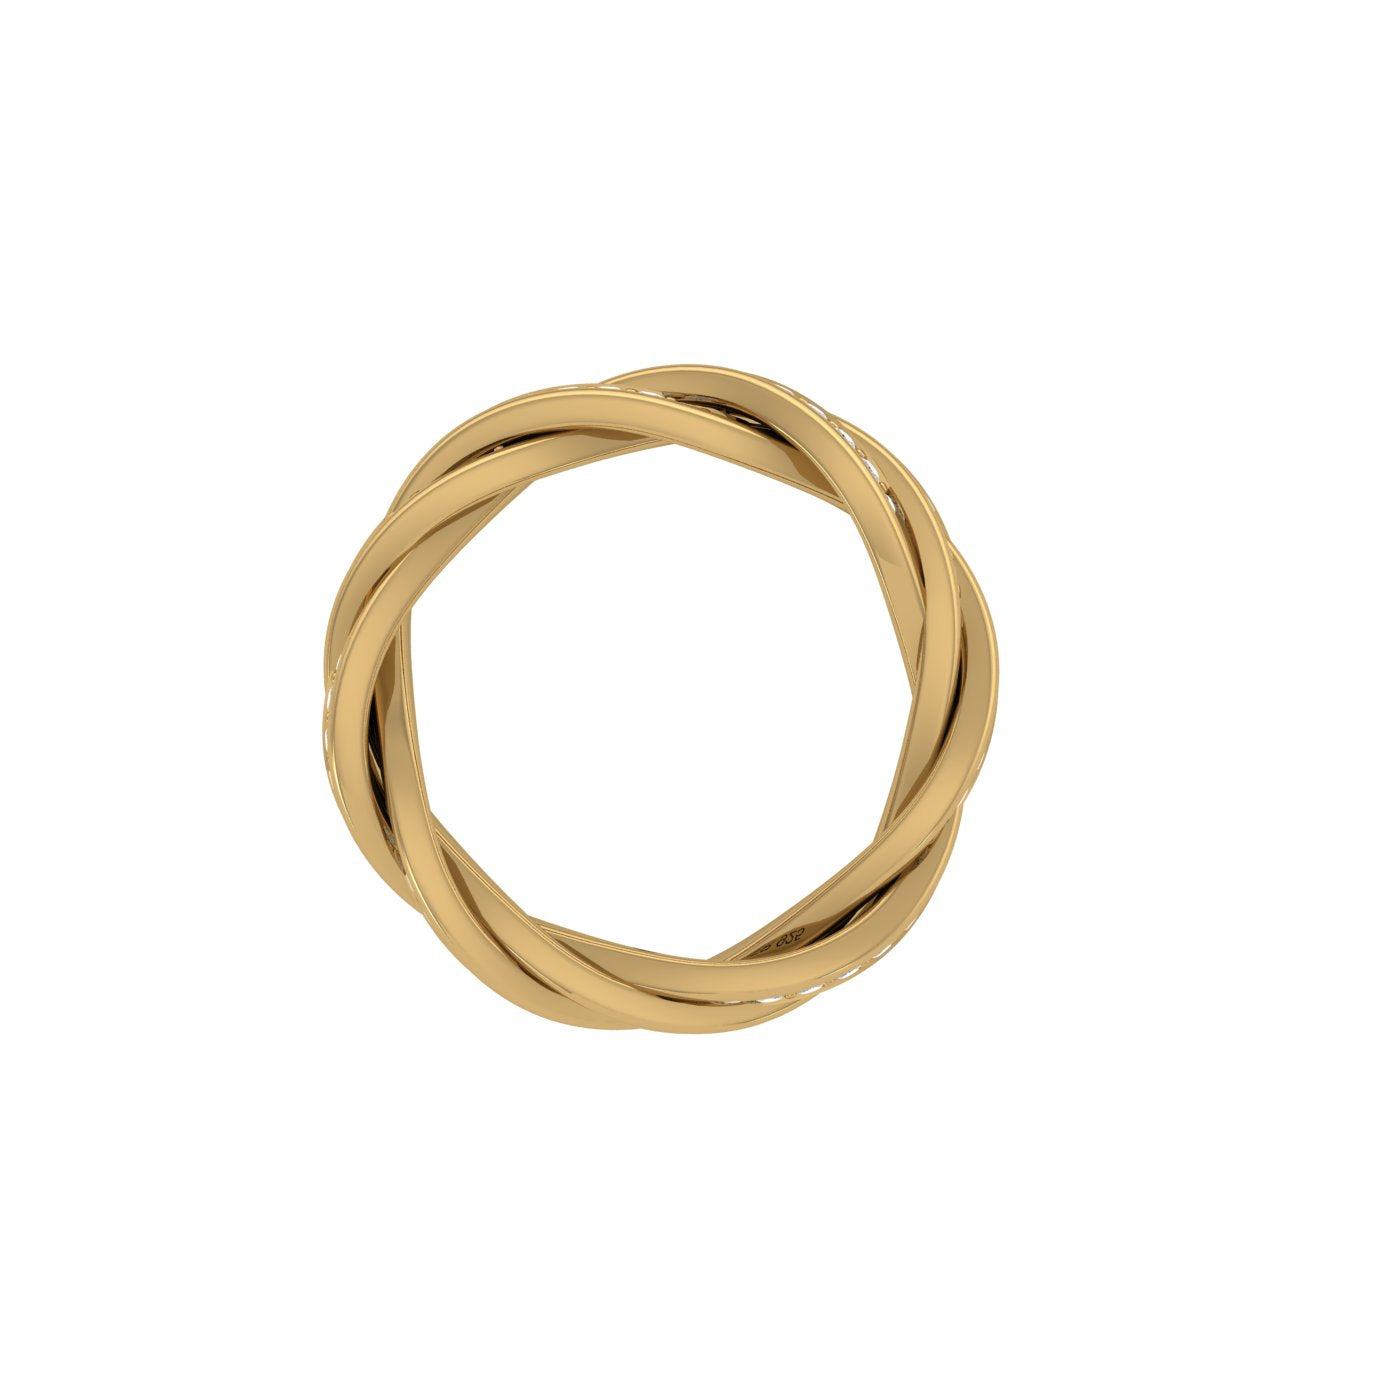 The Sterk Men's Ring